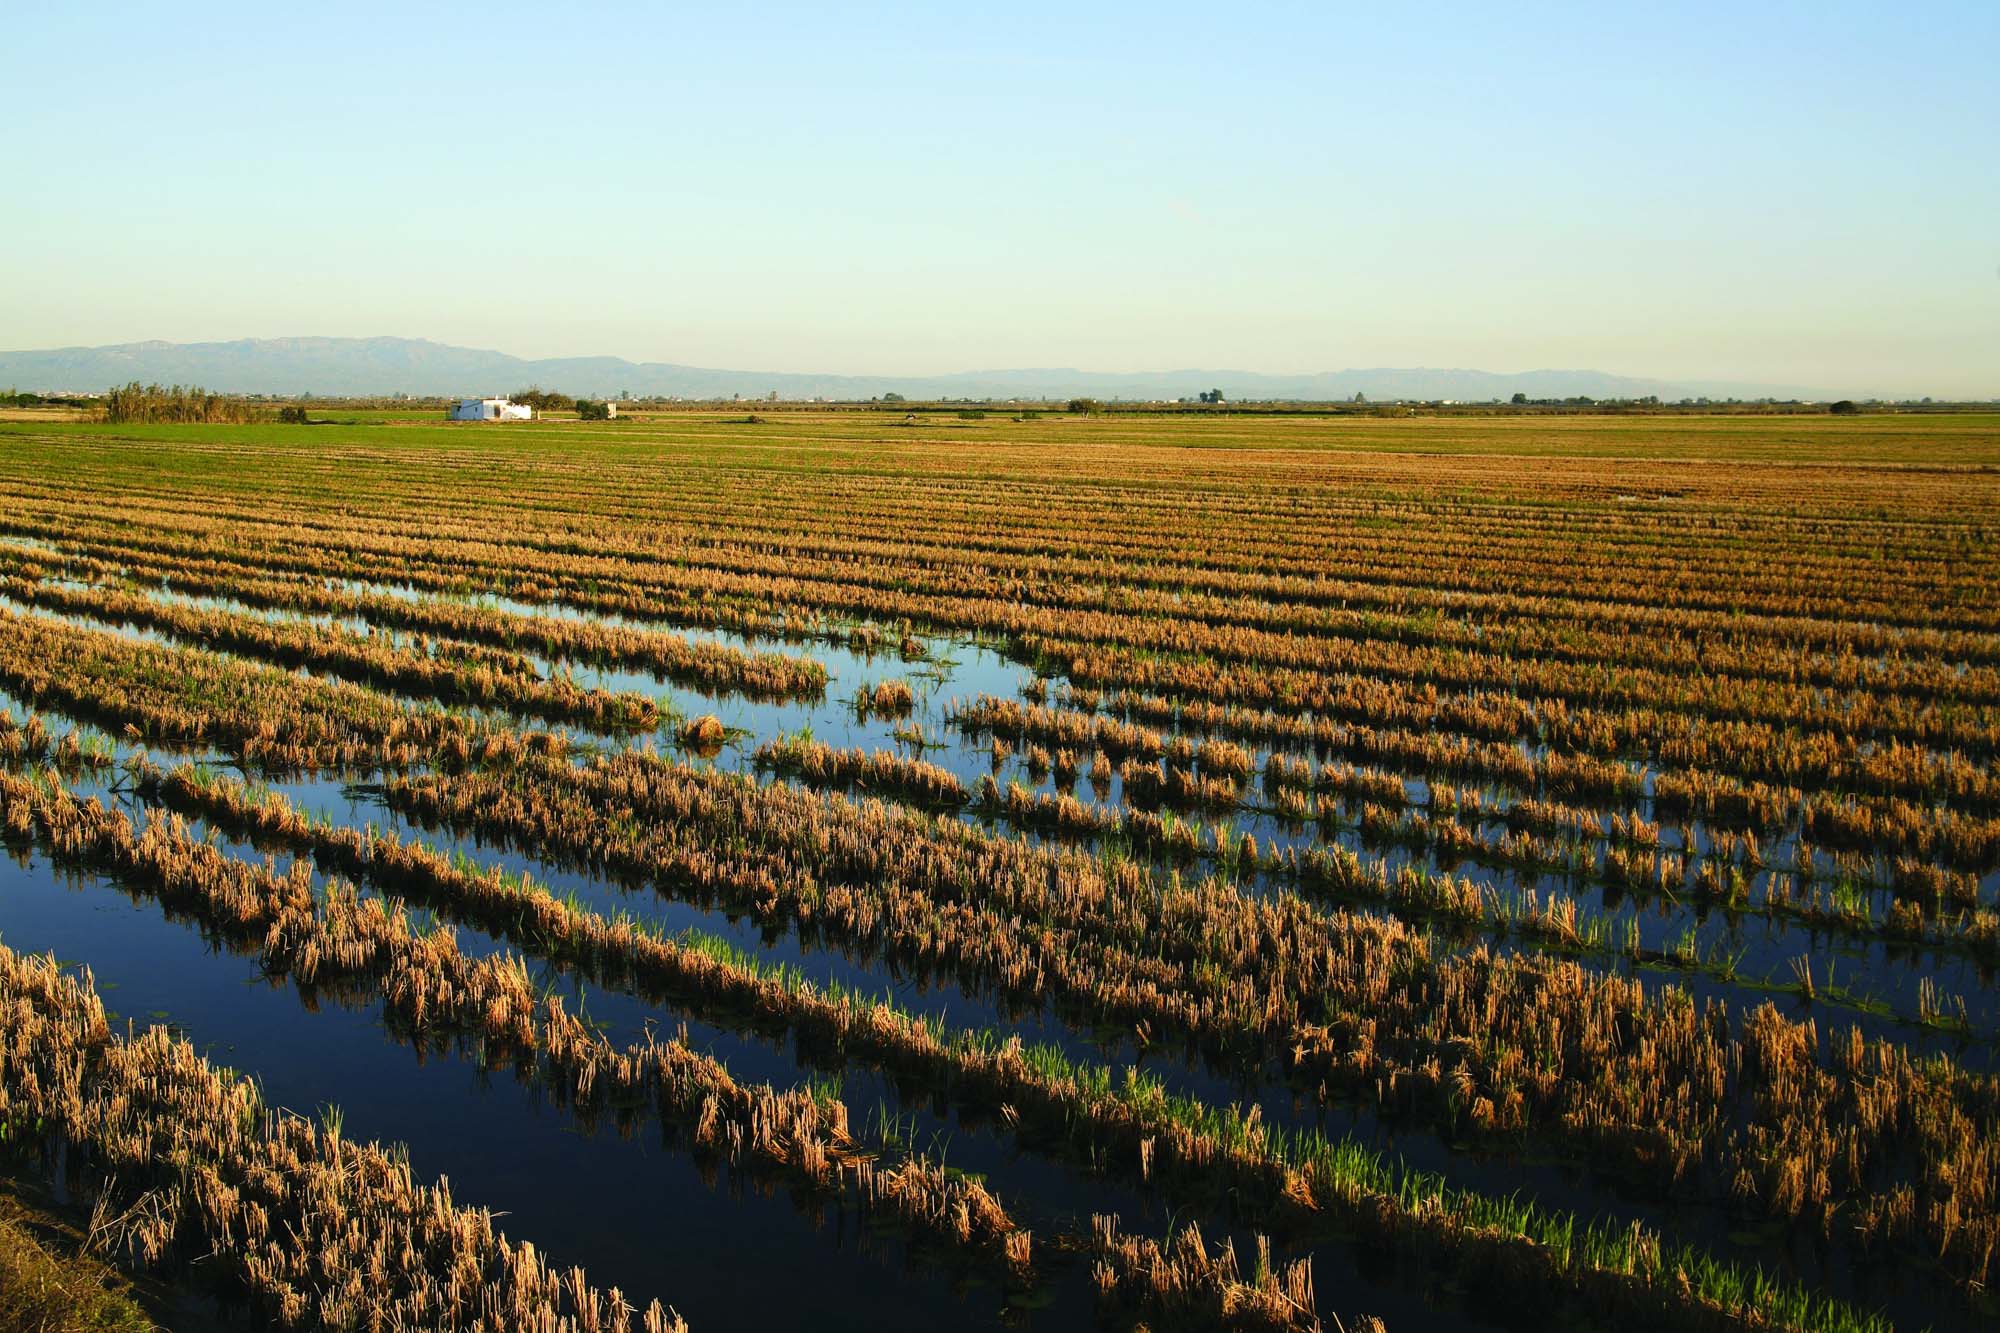 Résultat de recherche d'images pour "rizière delta de l'ebre"